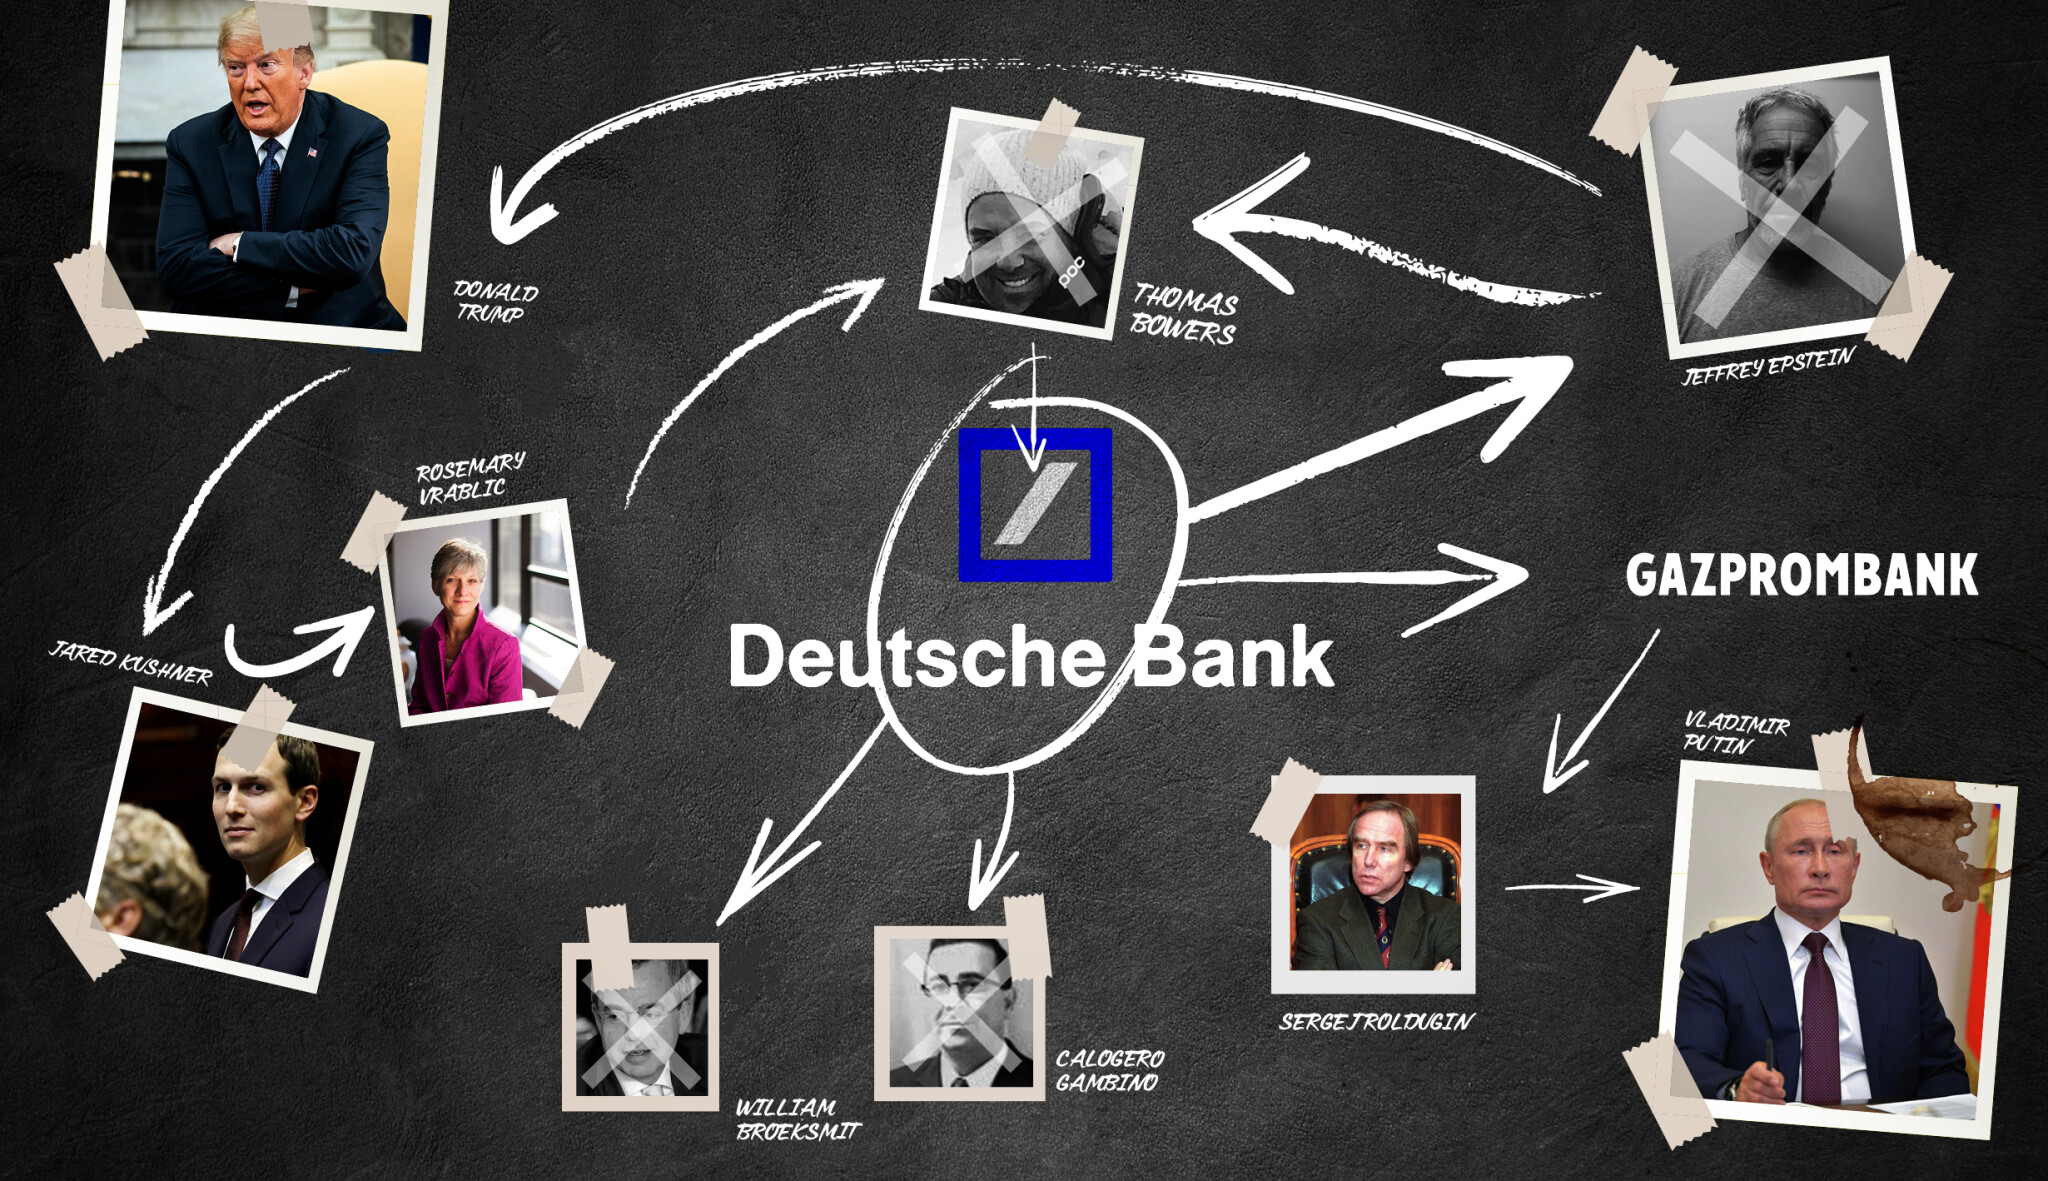 Podivné sebevraždy a klienti z řad prezidentů. Jak rozplést temnou pavučinu kolem Deutsche Bank